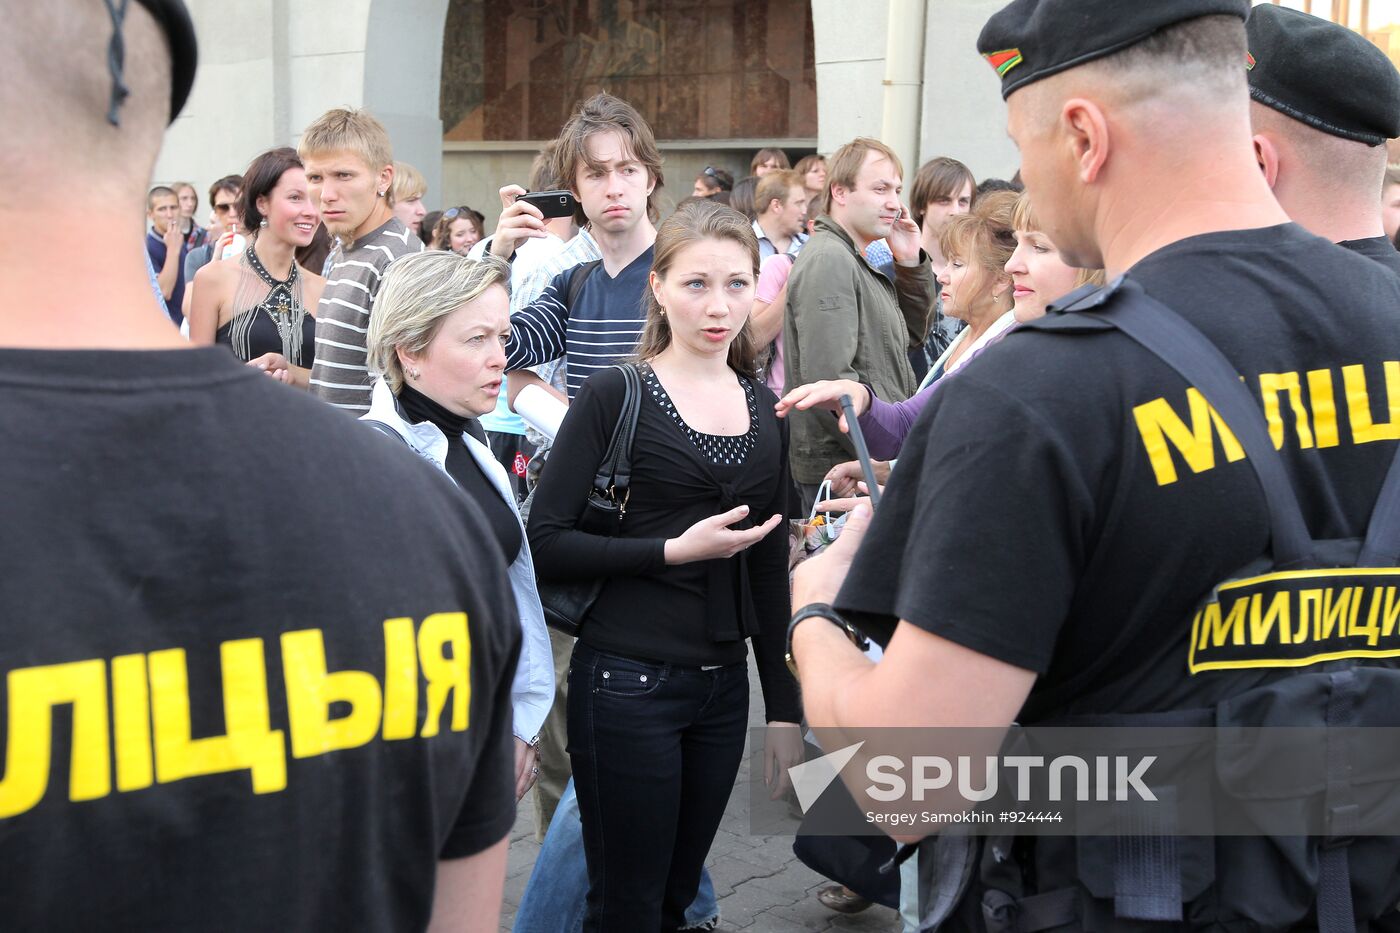 Rally in Minsk